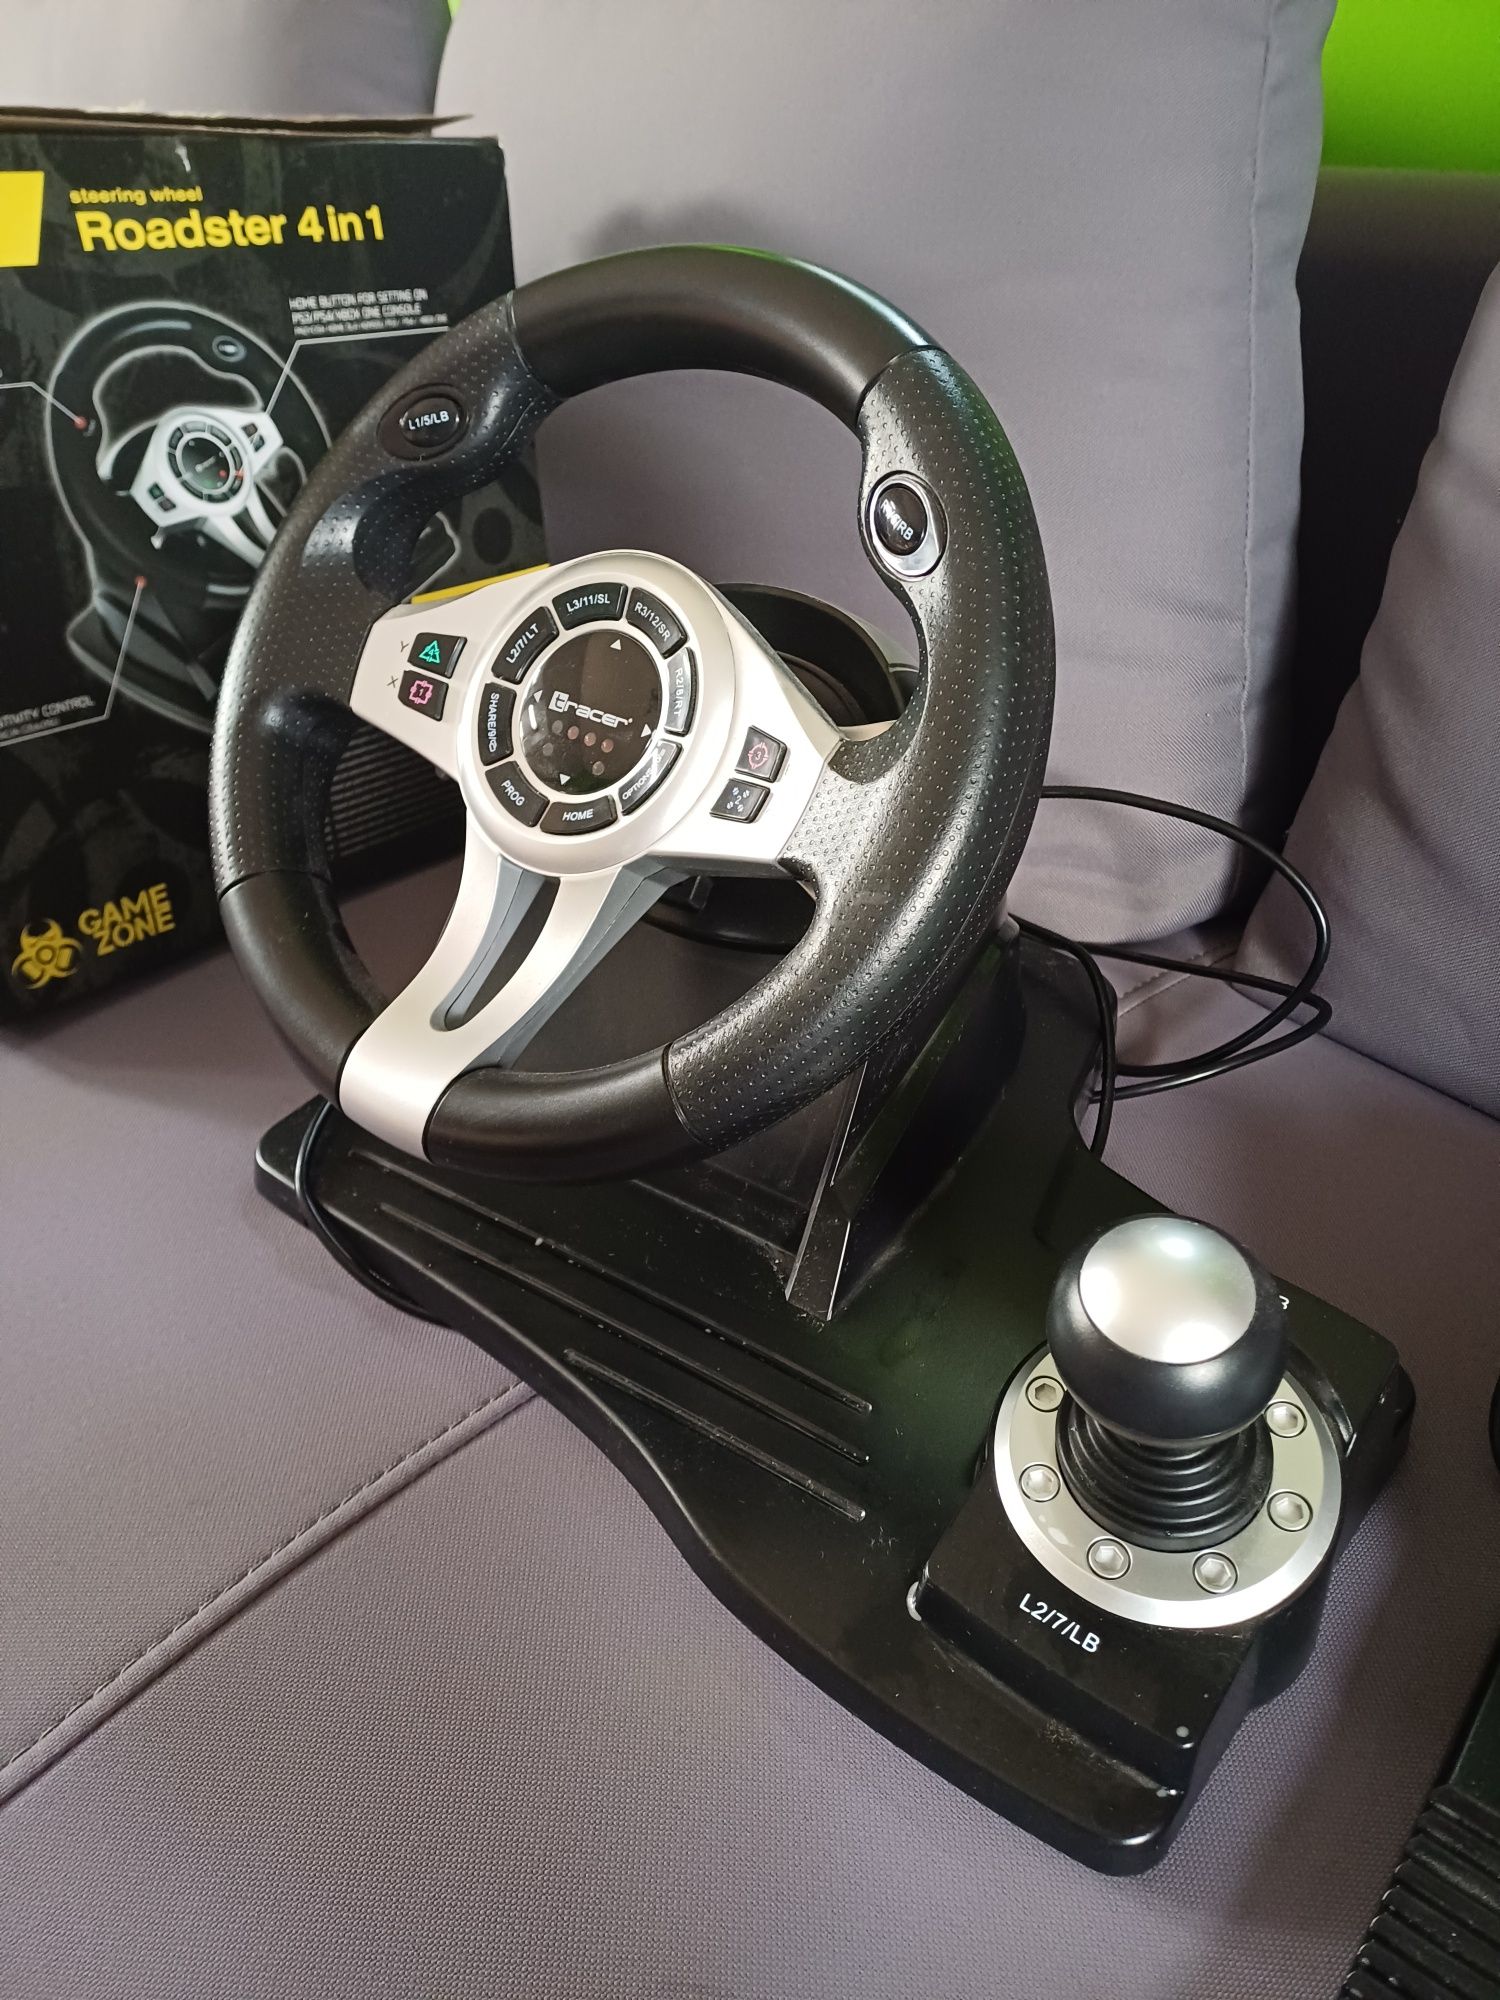 Kierownica gamingowa Roadster 4w1